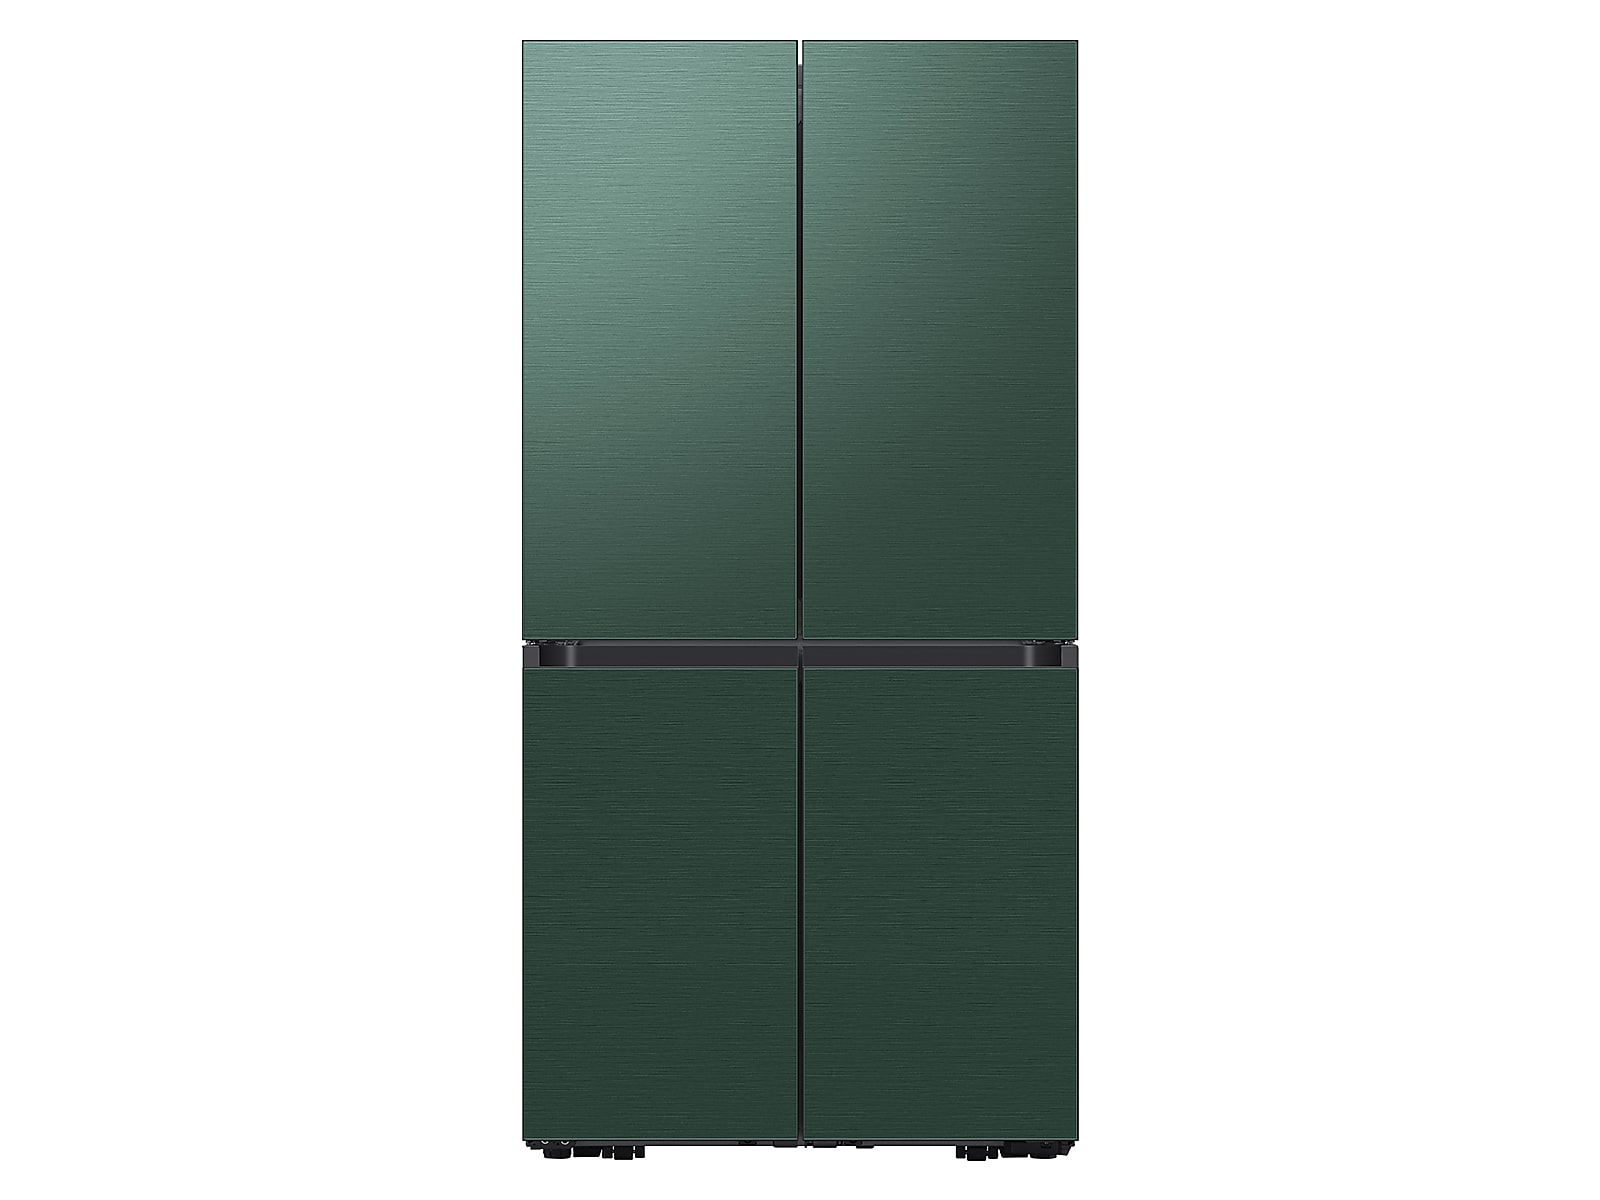 Samsung Bespoke 4-Door Flex™ Refrigerator (23 cu. ft.) in Emerald Green Steel(BNDL-1664307803241)